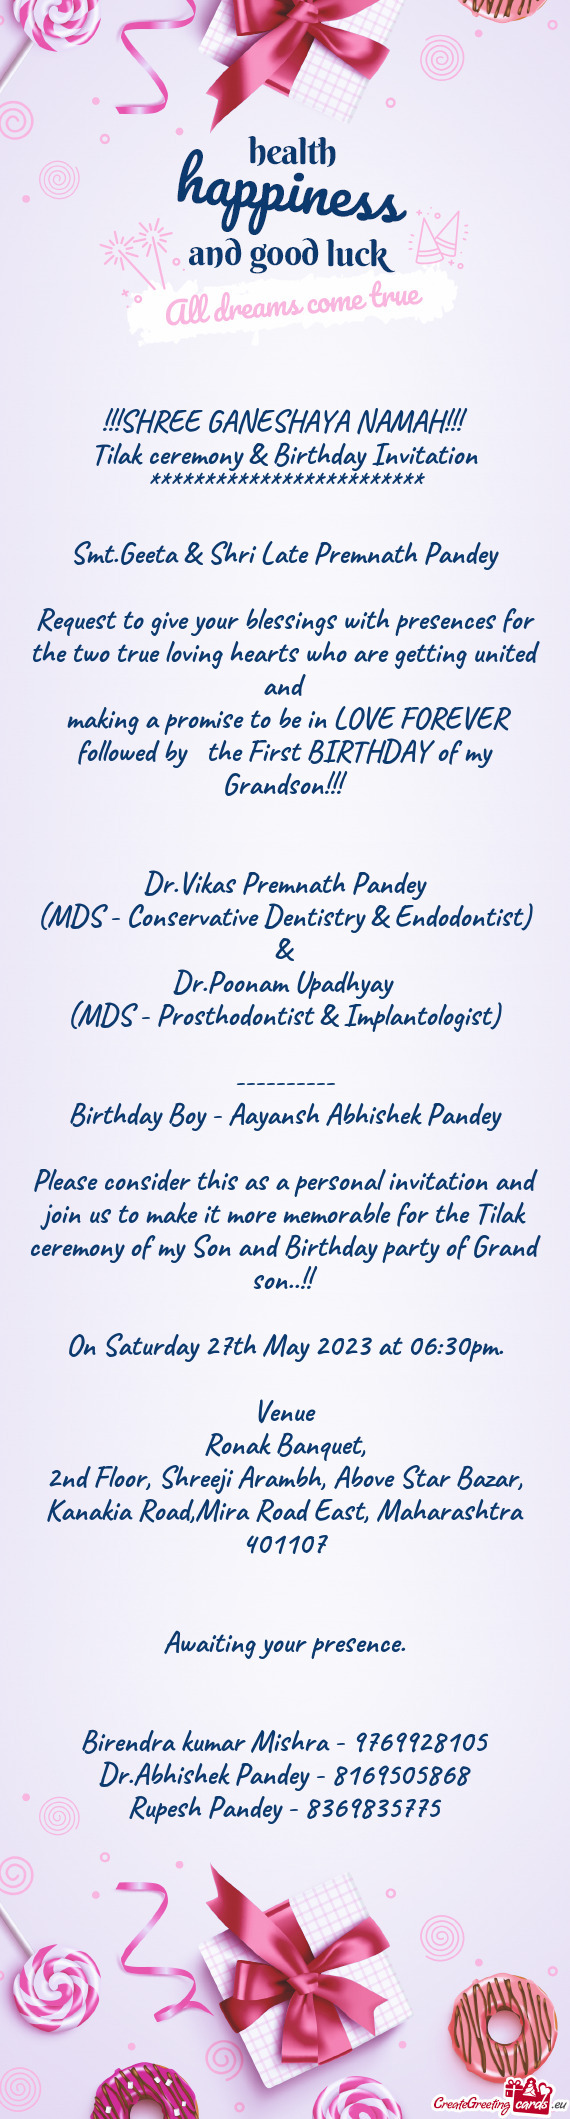 Dr.Vikas Premnath Pandey